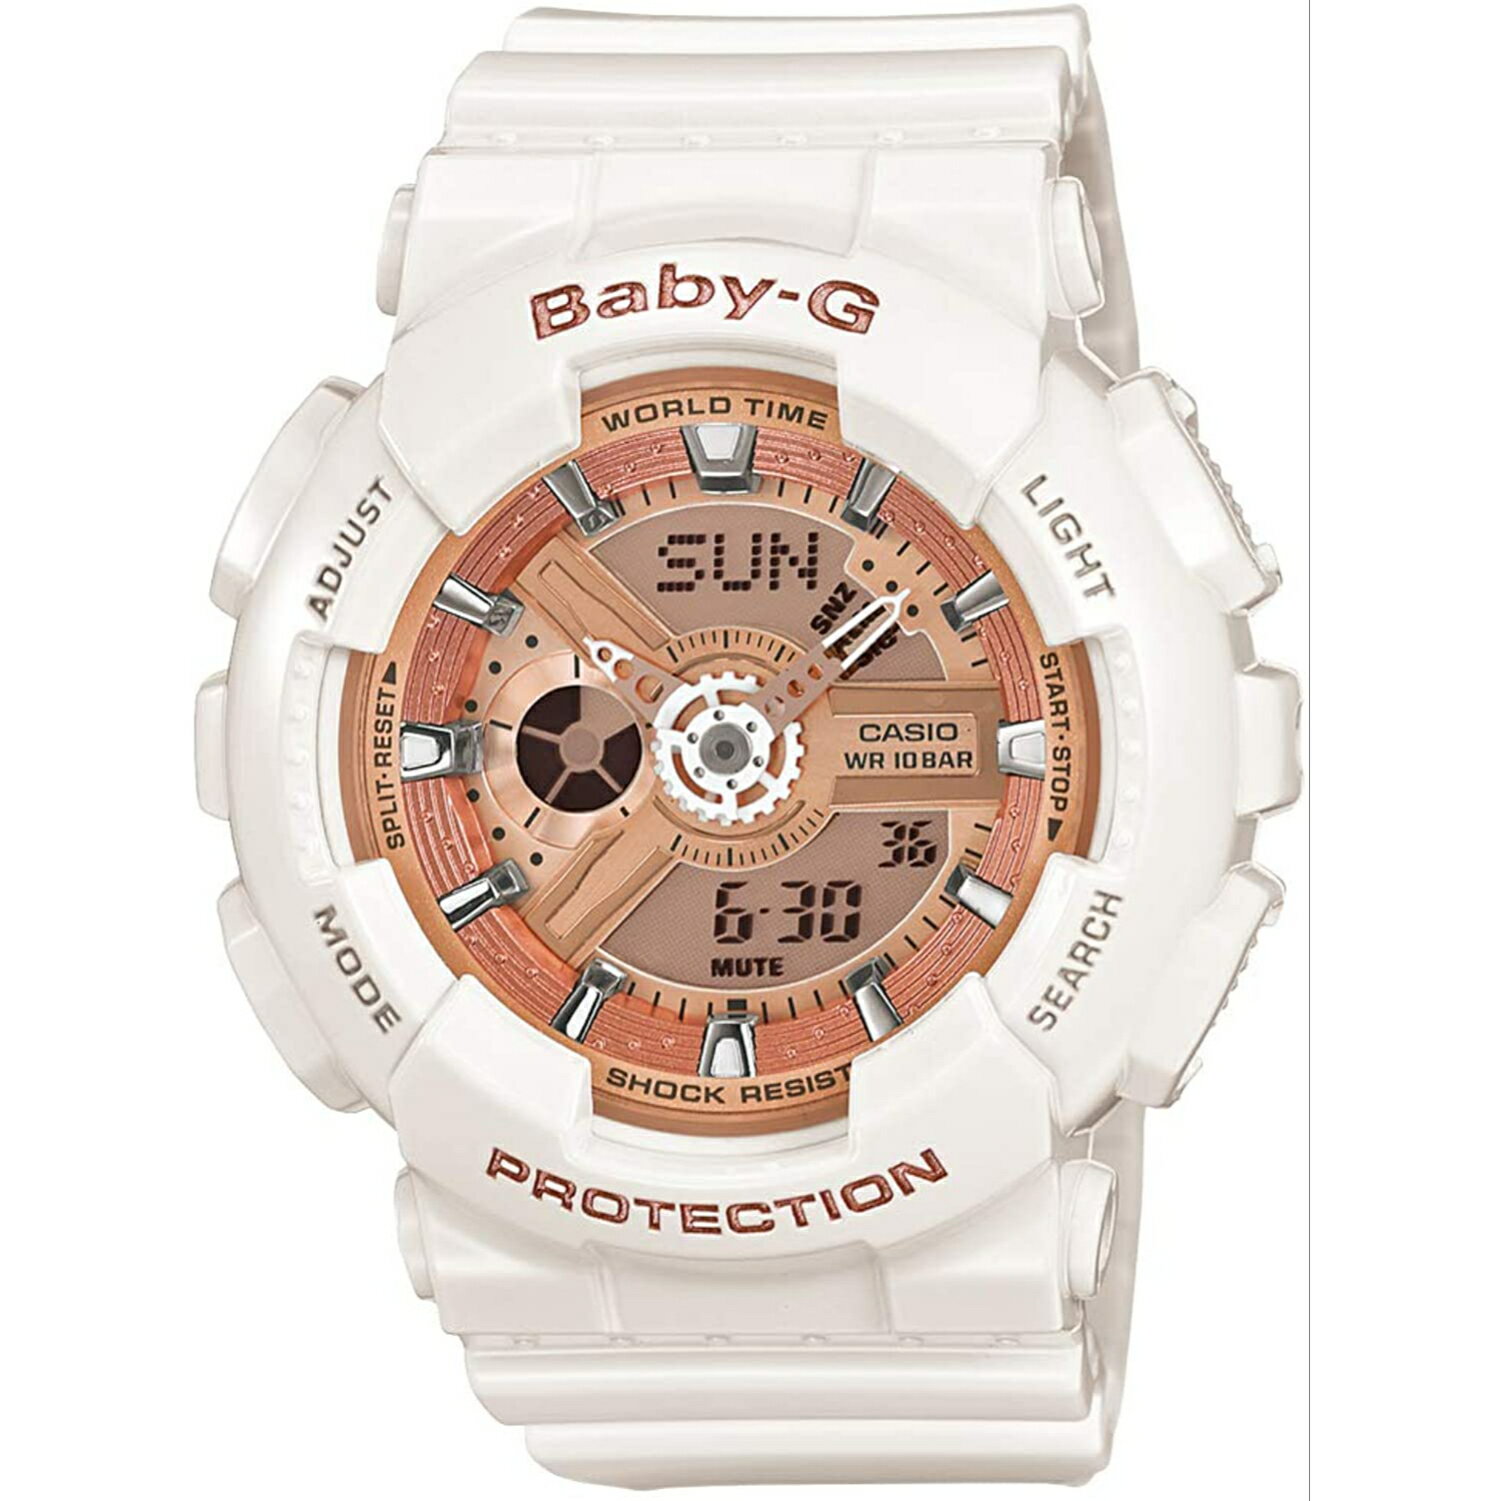 CASIO カシオ 腕時計 Baby-G ベビージー アナデジ BA-110-7A1 レディース